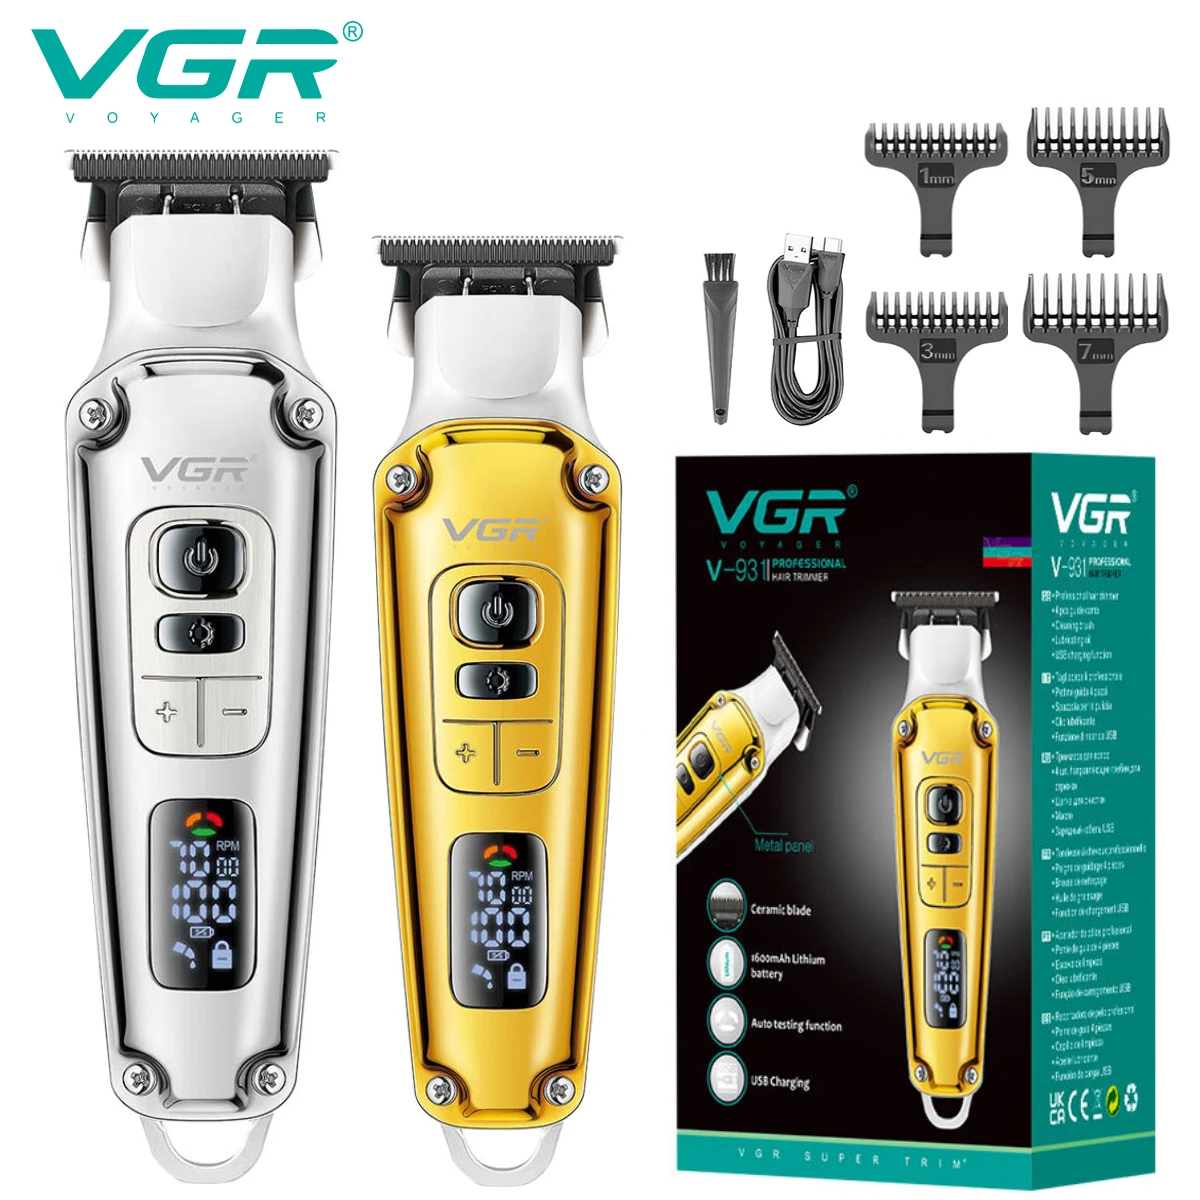 Профессиональная машинка для стрижки волос VGR, Электрическая Машинка для стрижки волос, Защита от перегрева, Парикмахерский Триммер для мужчин V-931